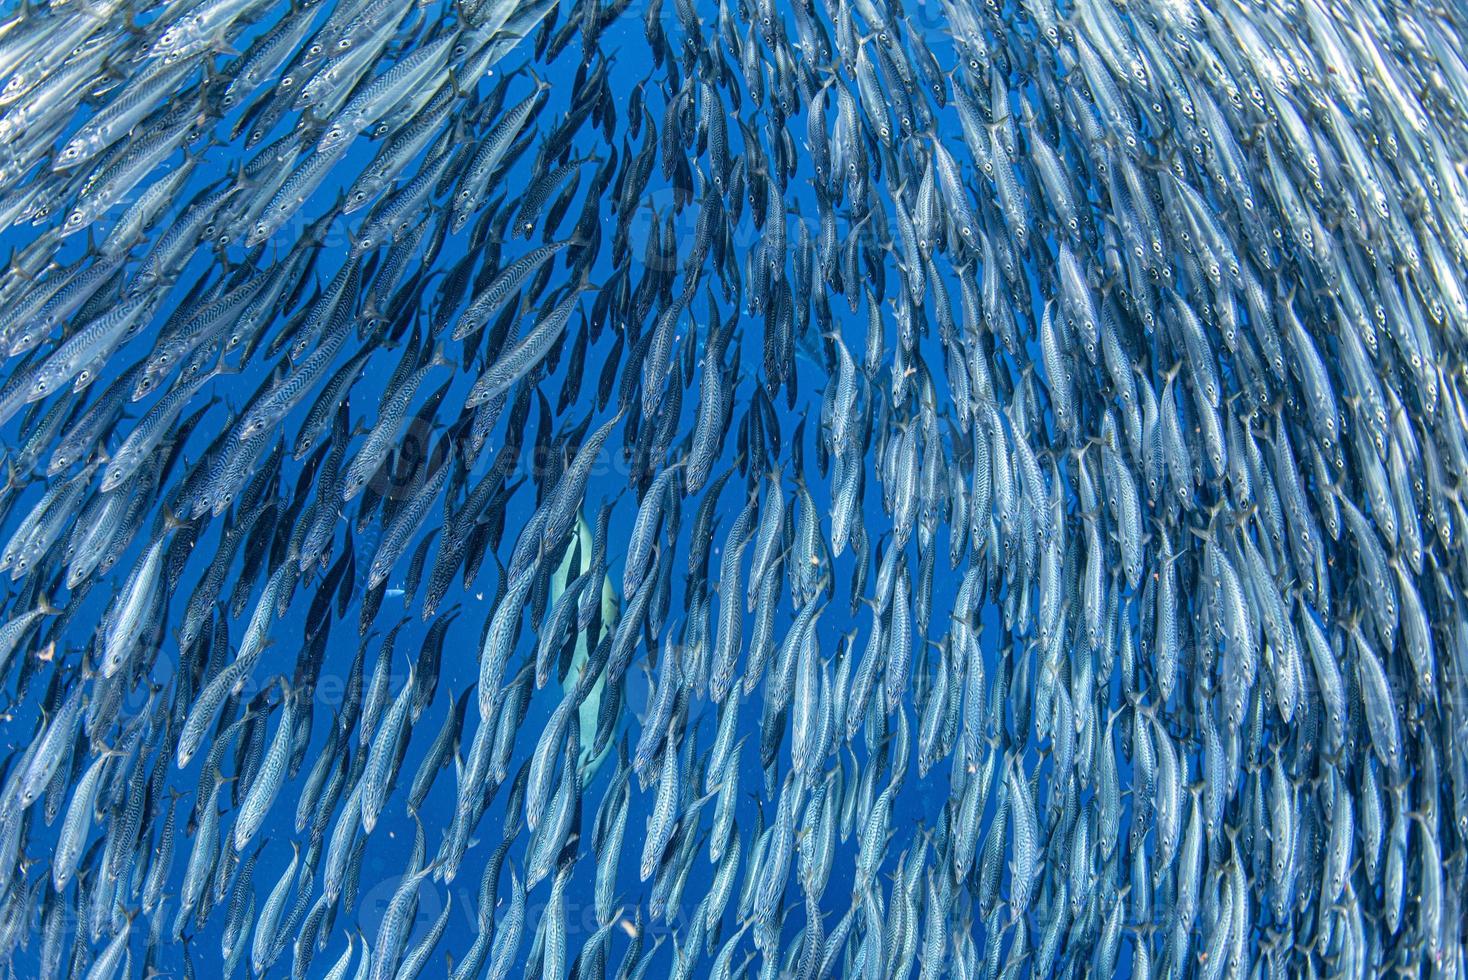 Gestreifte Marlin- und Seelöwenjagd im Sardinenköderball im Pazifischen Ozean foto